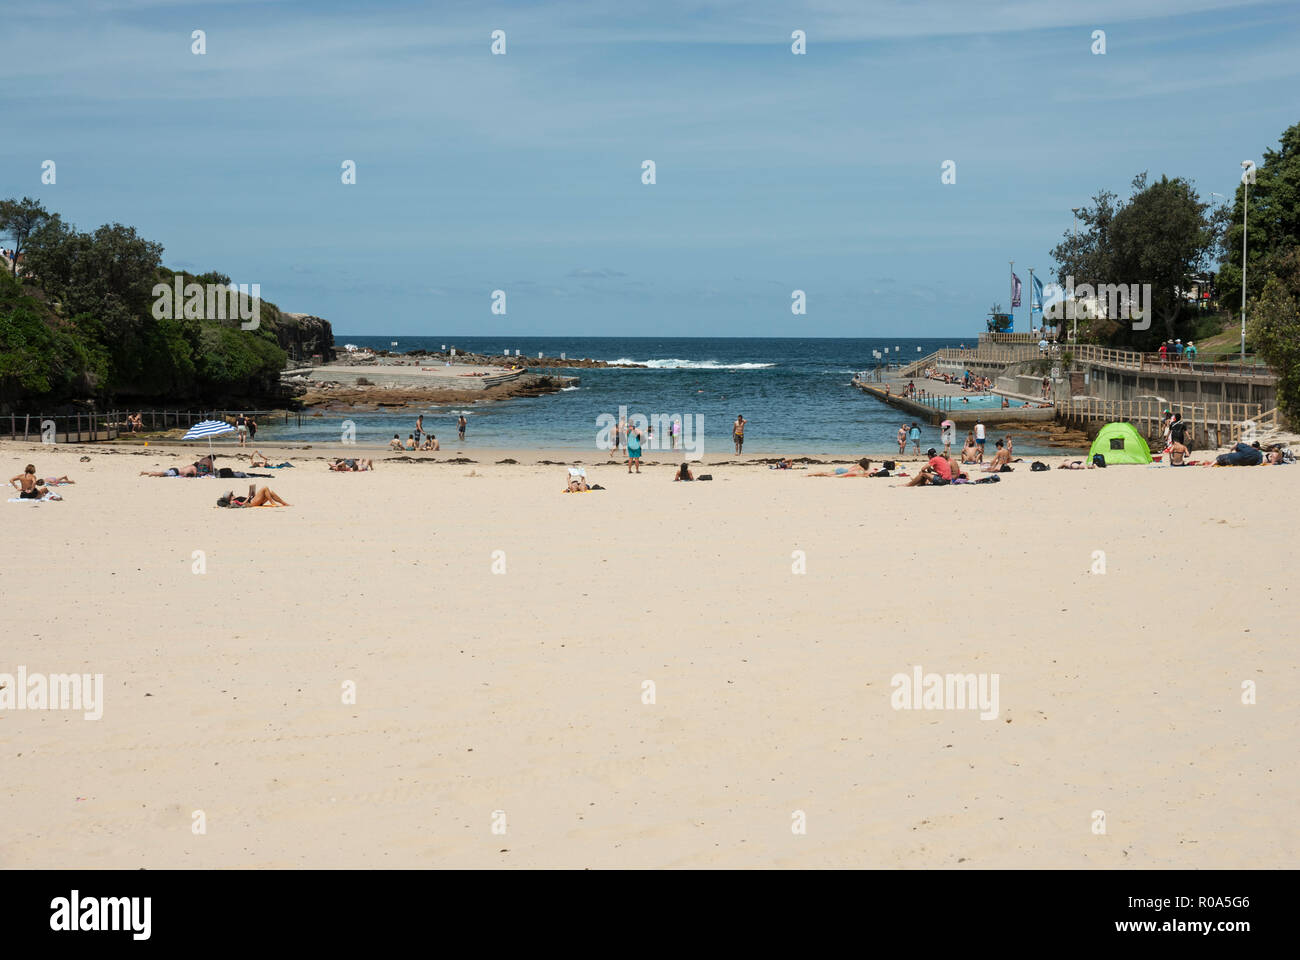 Vista de la playa de arenas doradas de la playa Clovelly, Sydney, con gente tomando el sol y nadando en el mar y a la derecha hay una piscina. Foto de stock